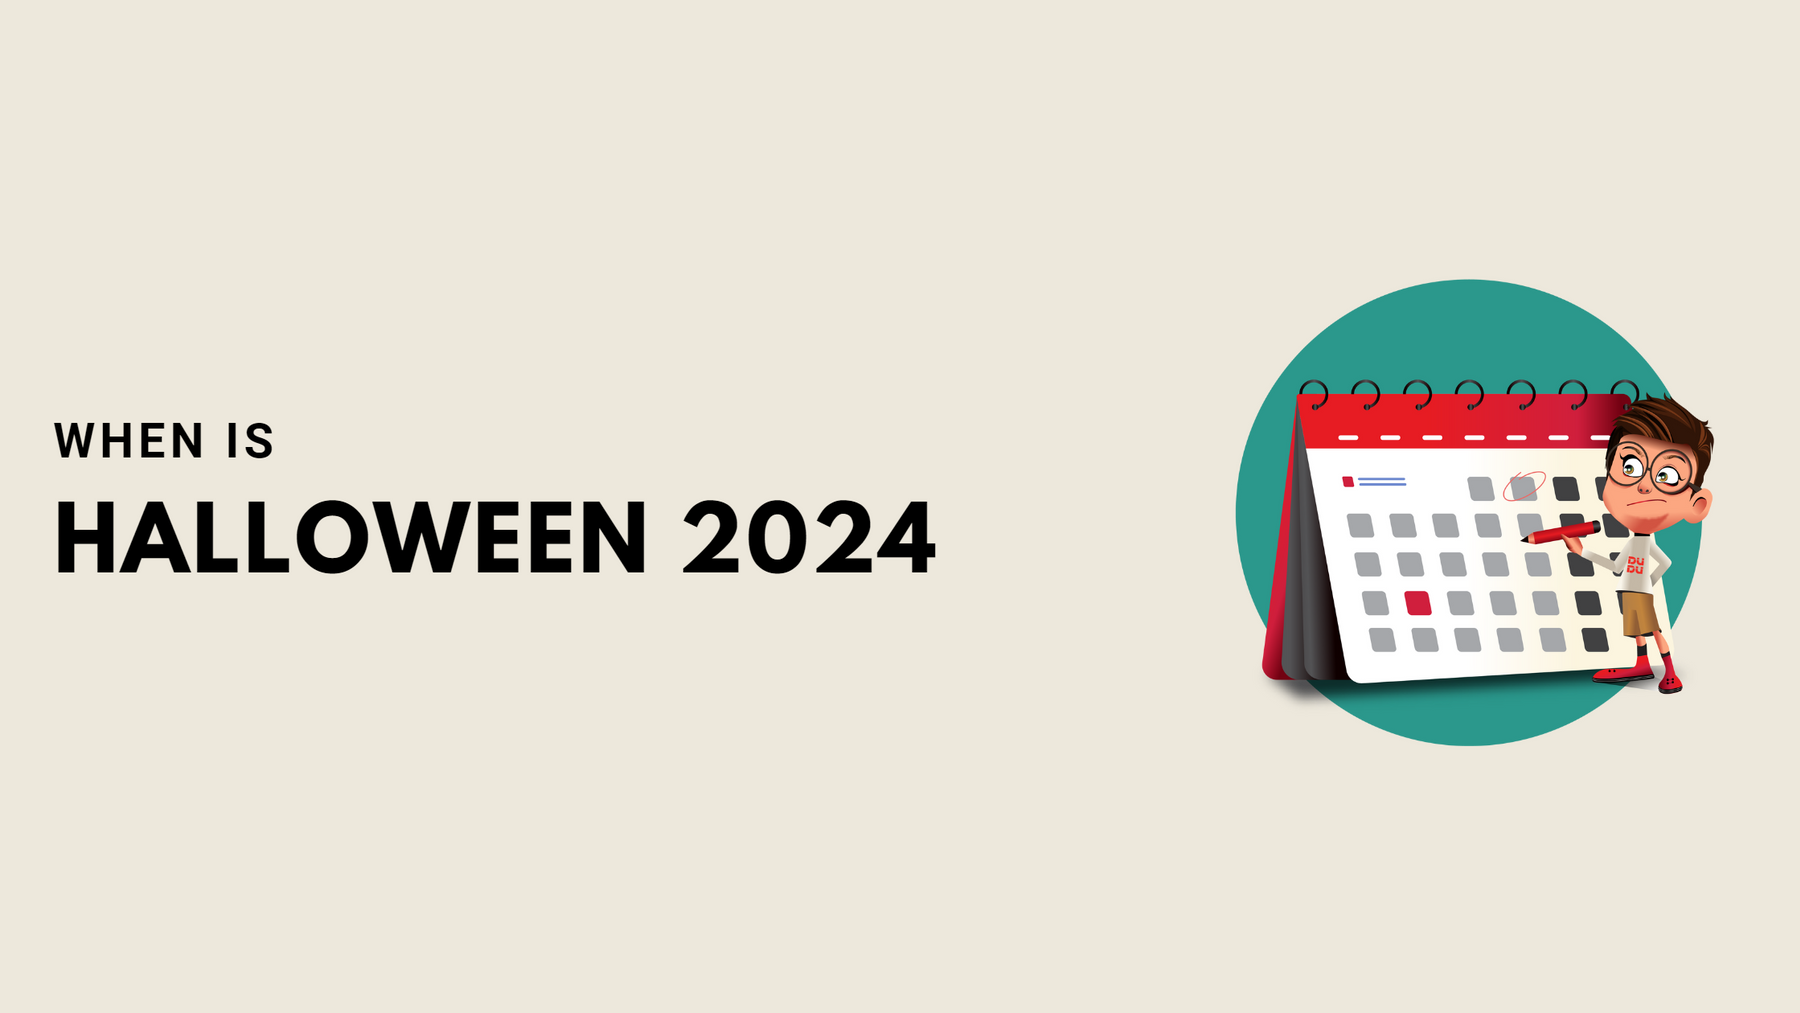 When Is Halloween 2024?